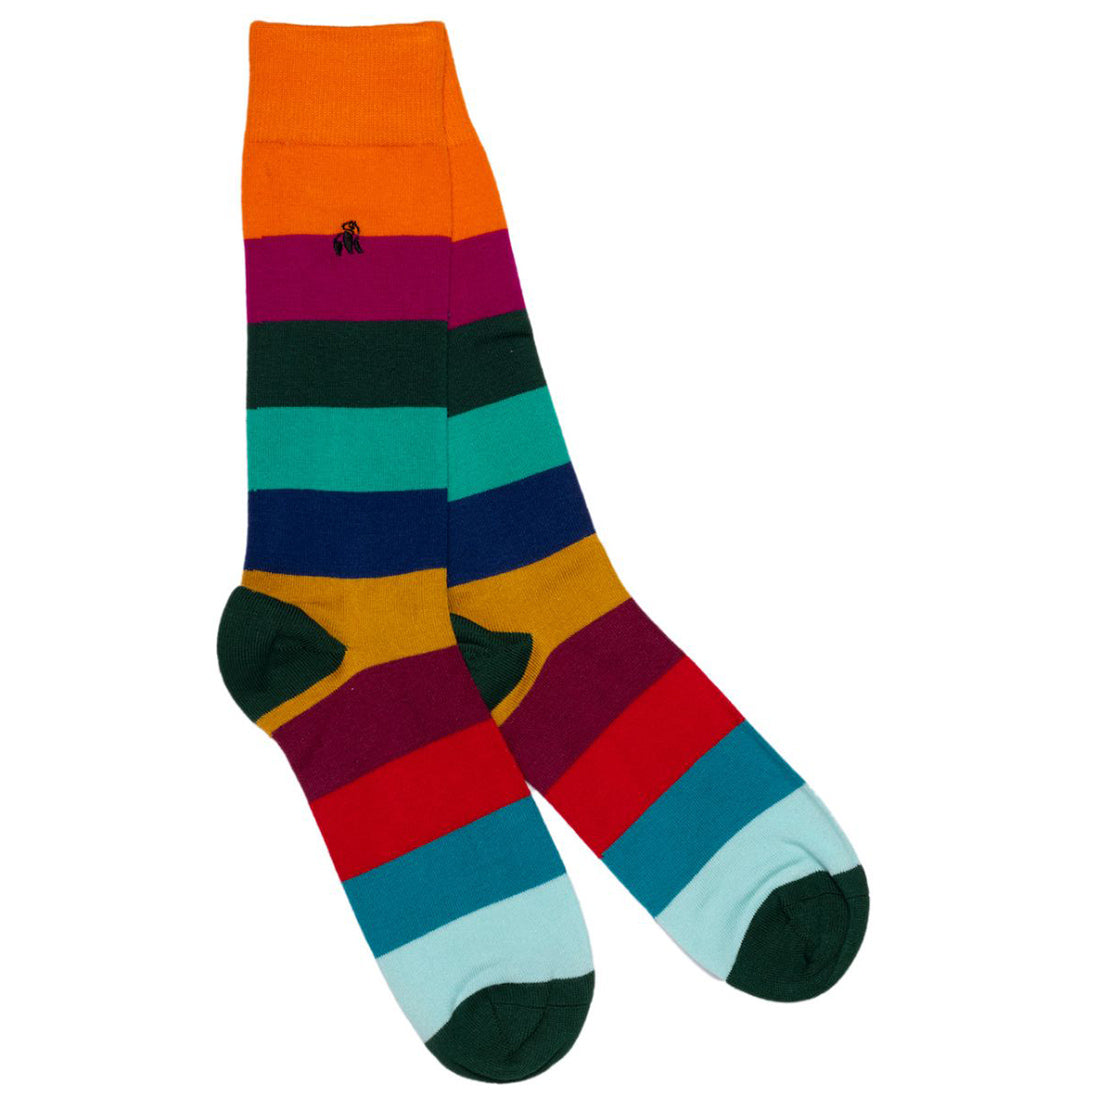 socks-block-striped-bamboo-socks-1_c64a7fc0-2d5d-4c29-b6c5-42d25374b877.jpg